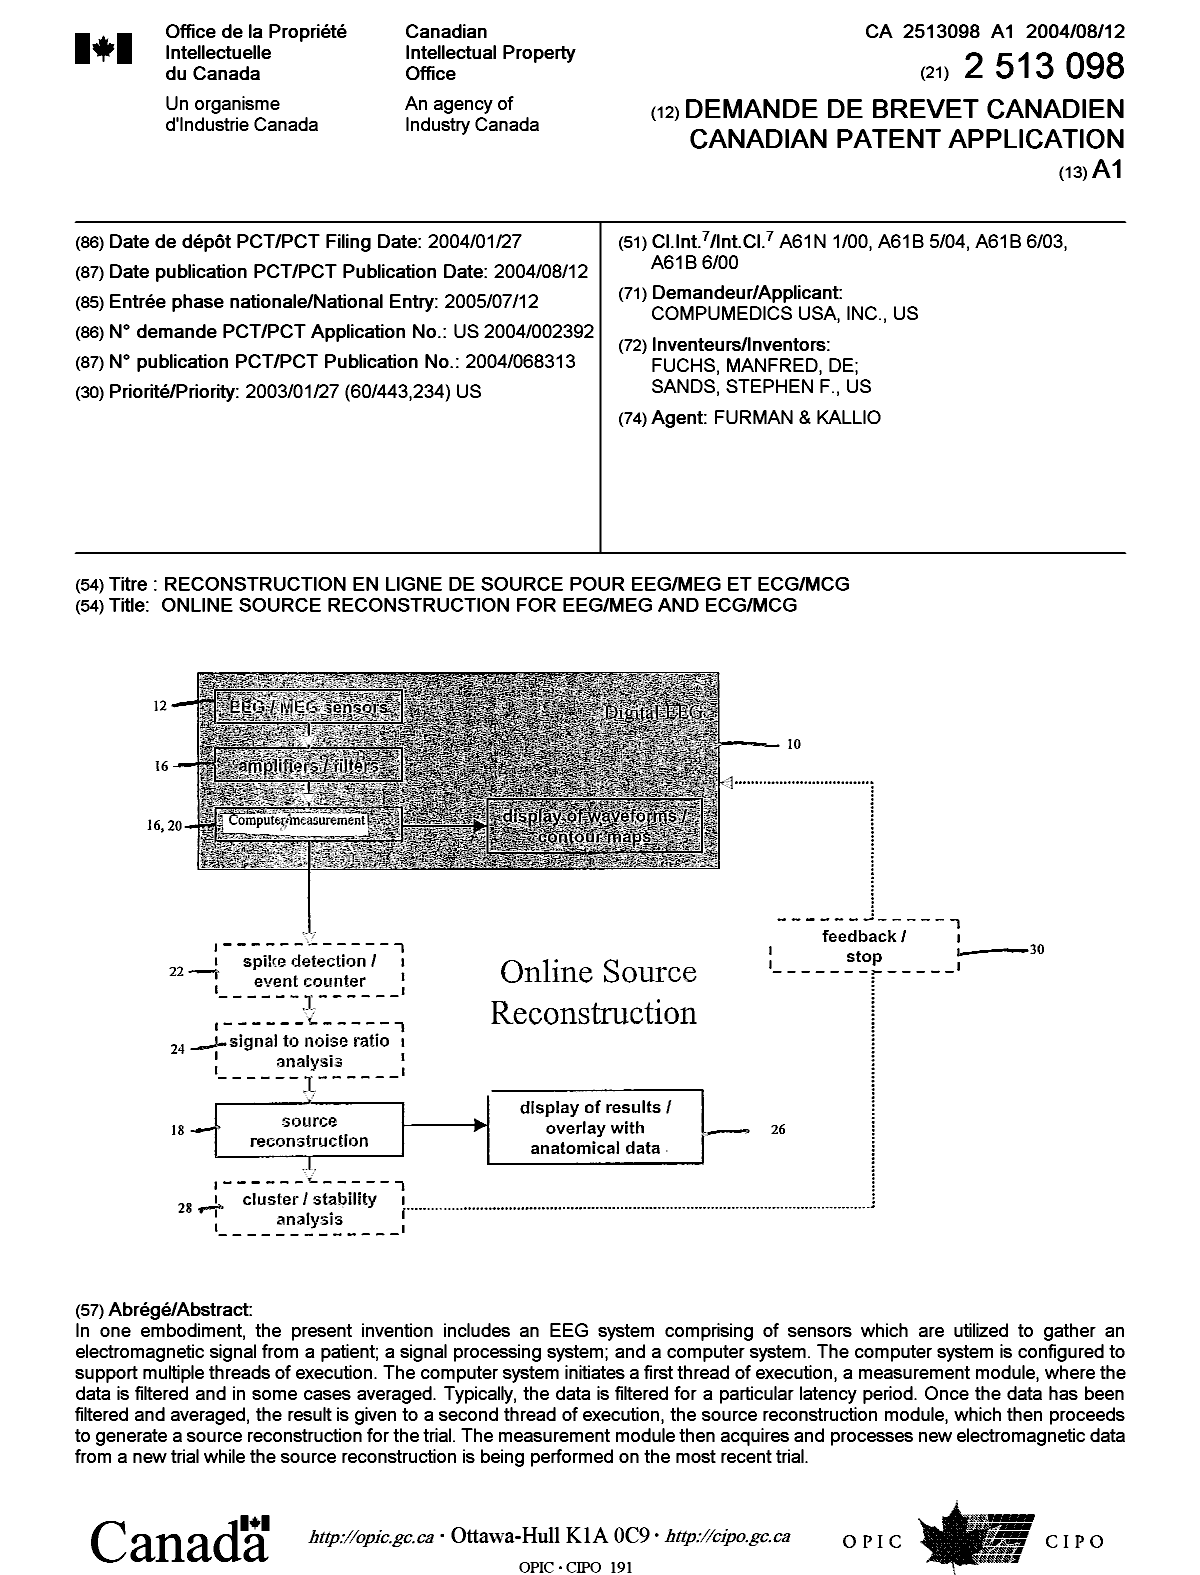 Document de brevet canadien 2513098. Page couverture 20050929. Image 1 de 1